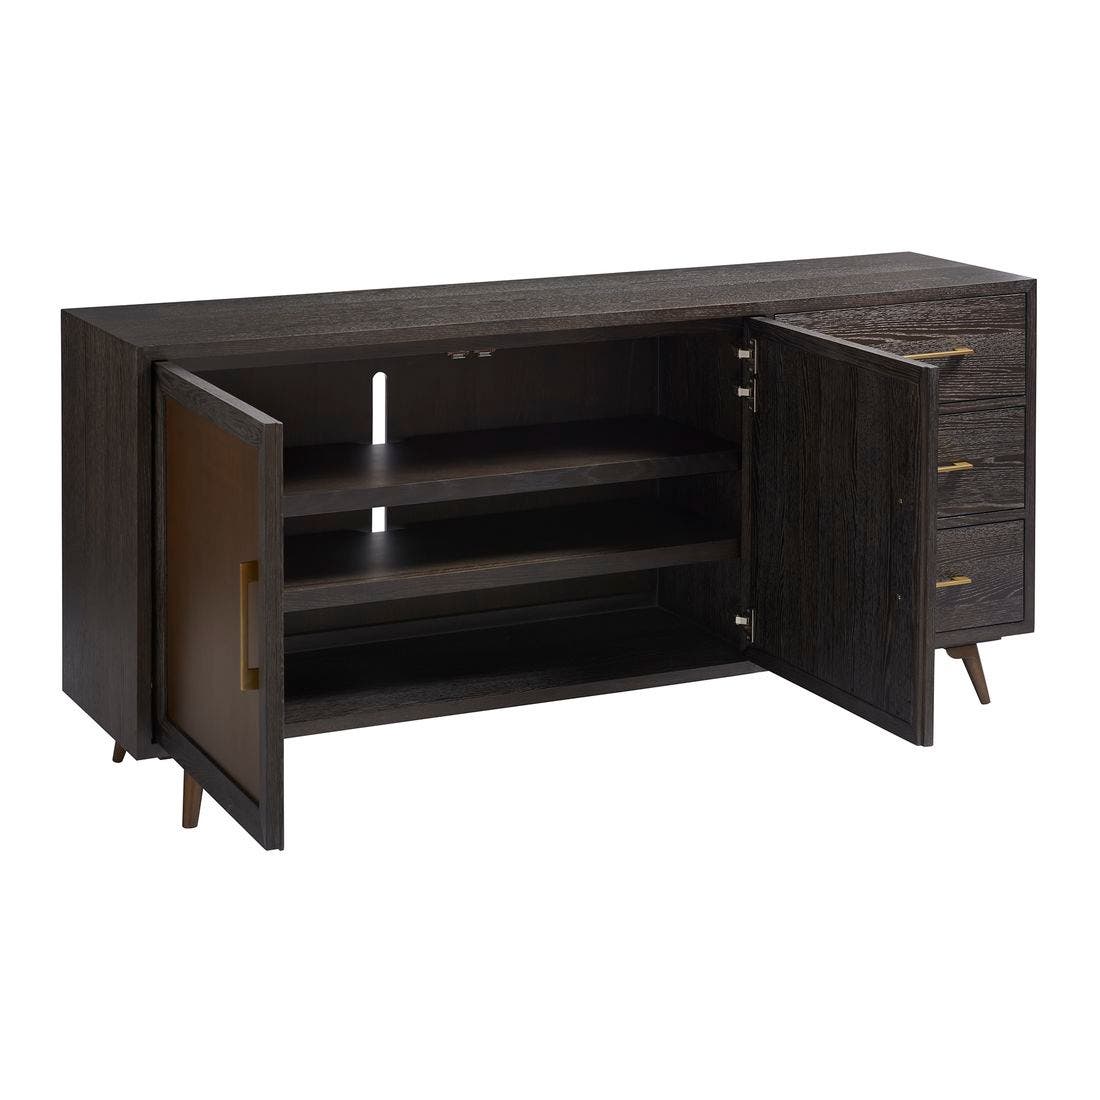 19170503-modern-onyx-furniture-storage-organization-storage-furniture-06